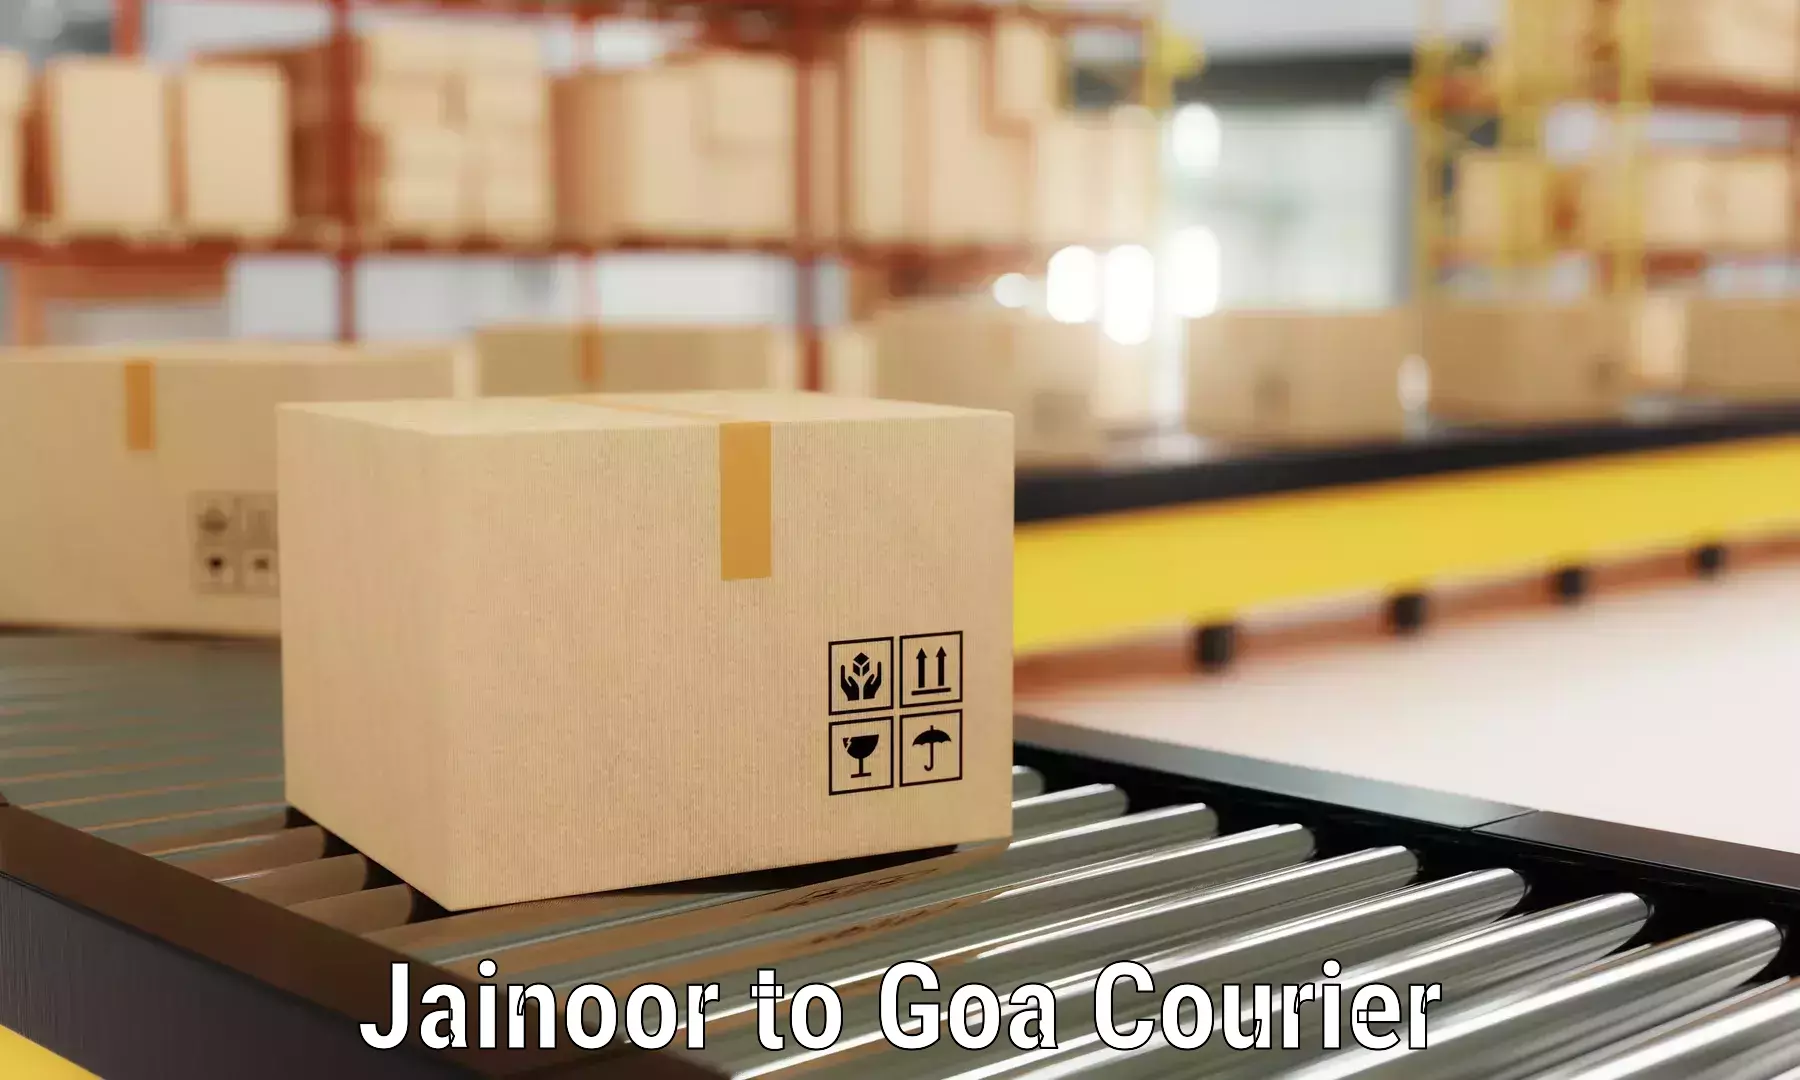 Budget-friendly movers Jainoor to Panjim